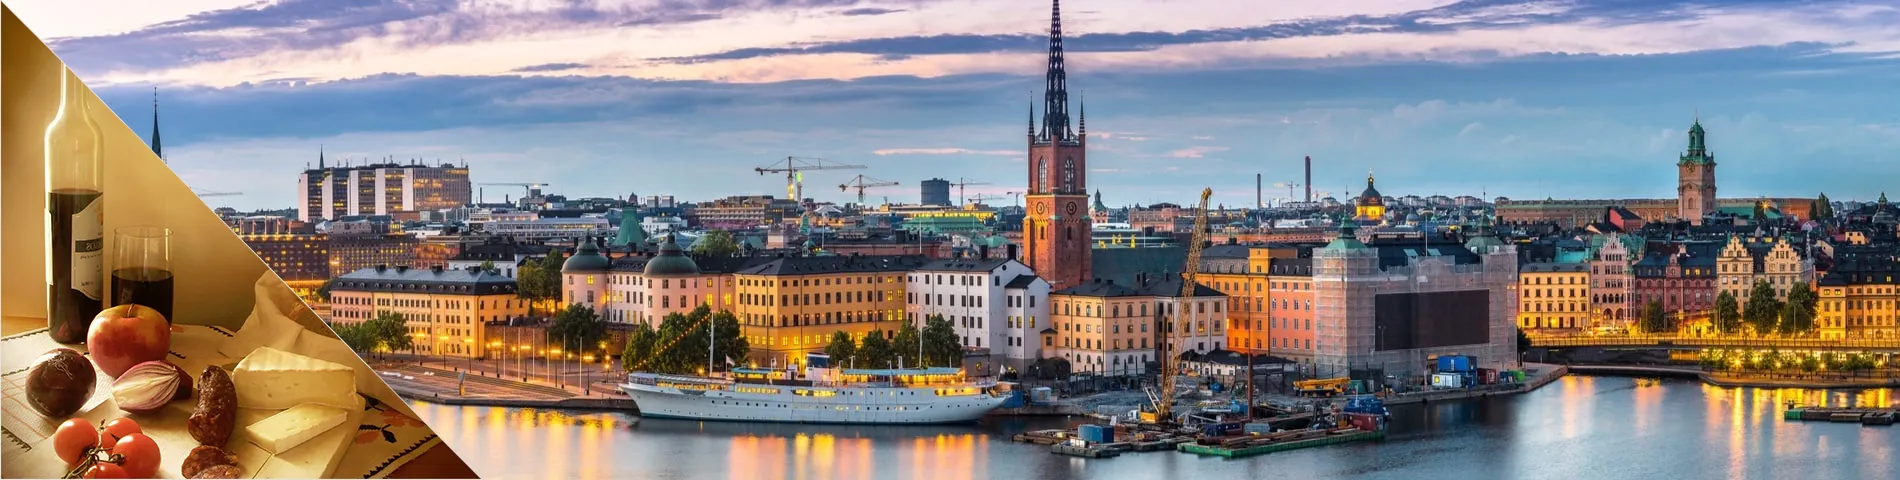 스톡홀름 - 스웨덴어 와 문화